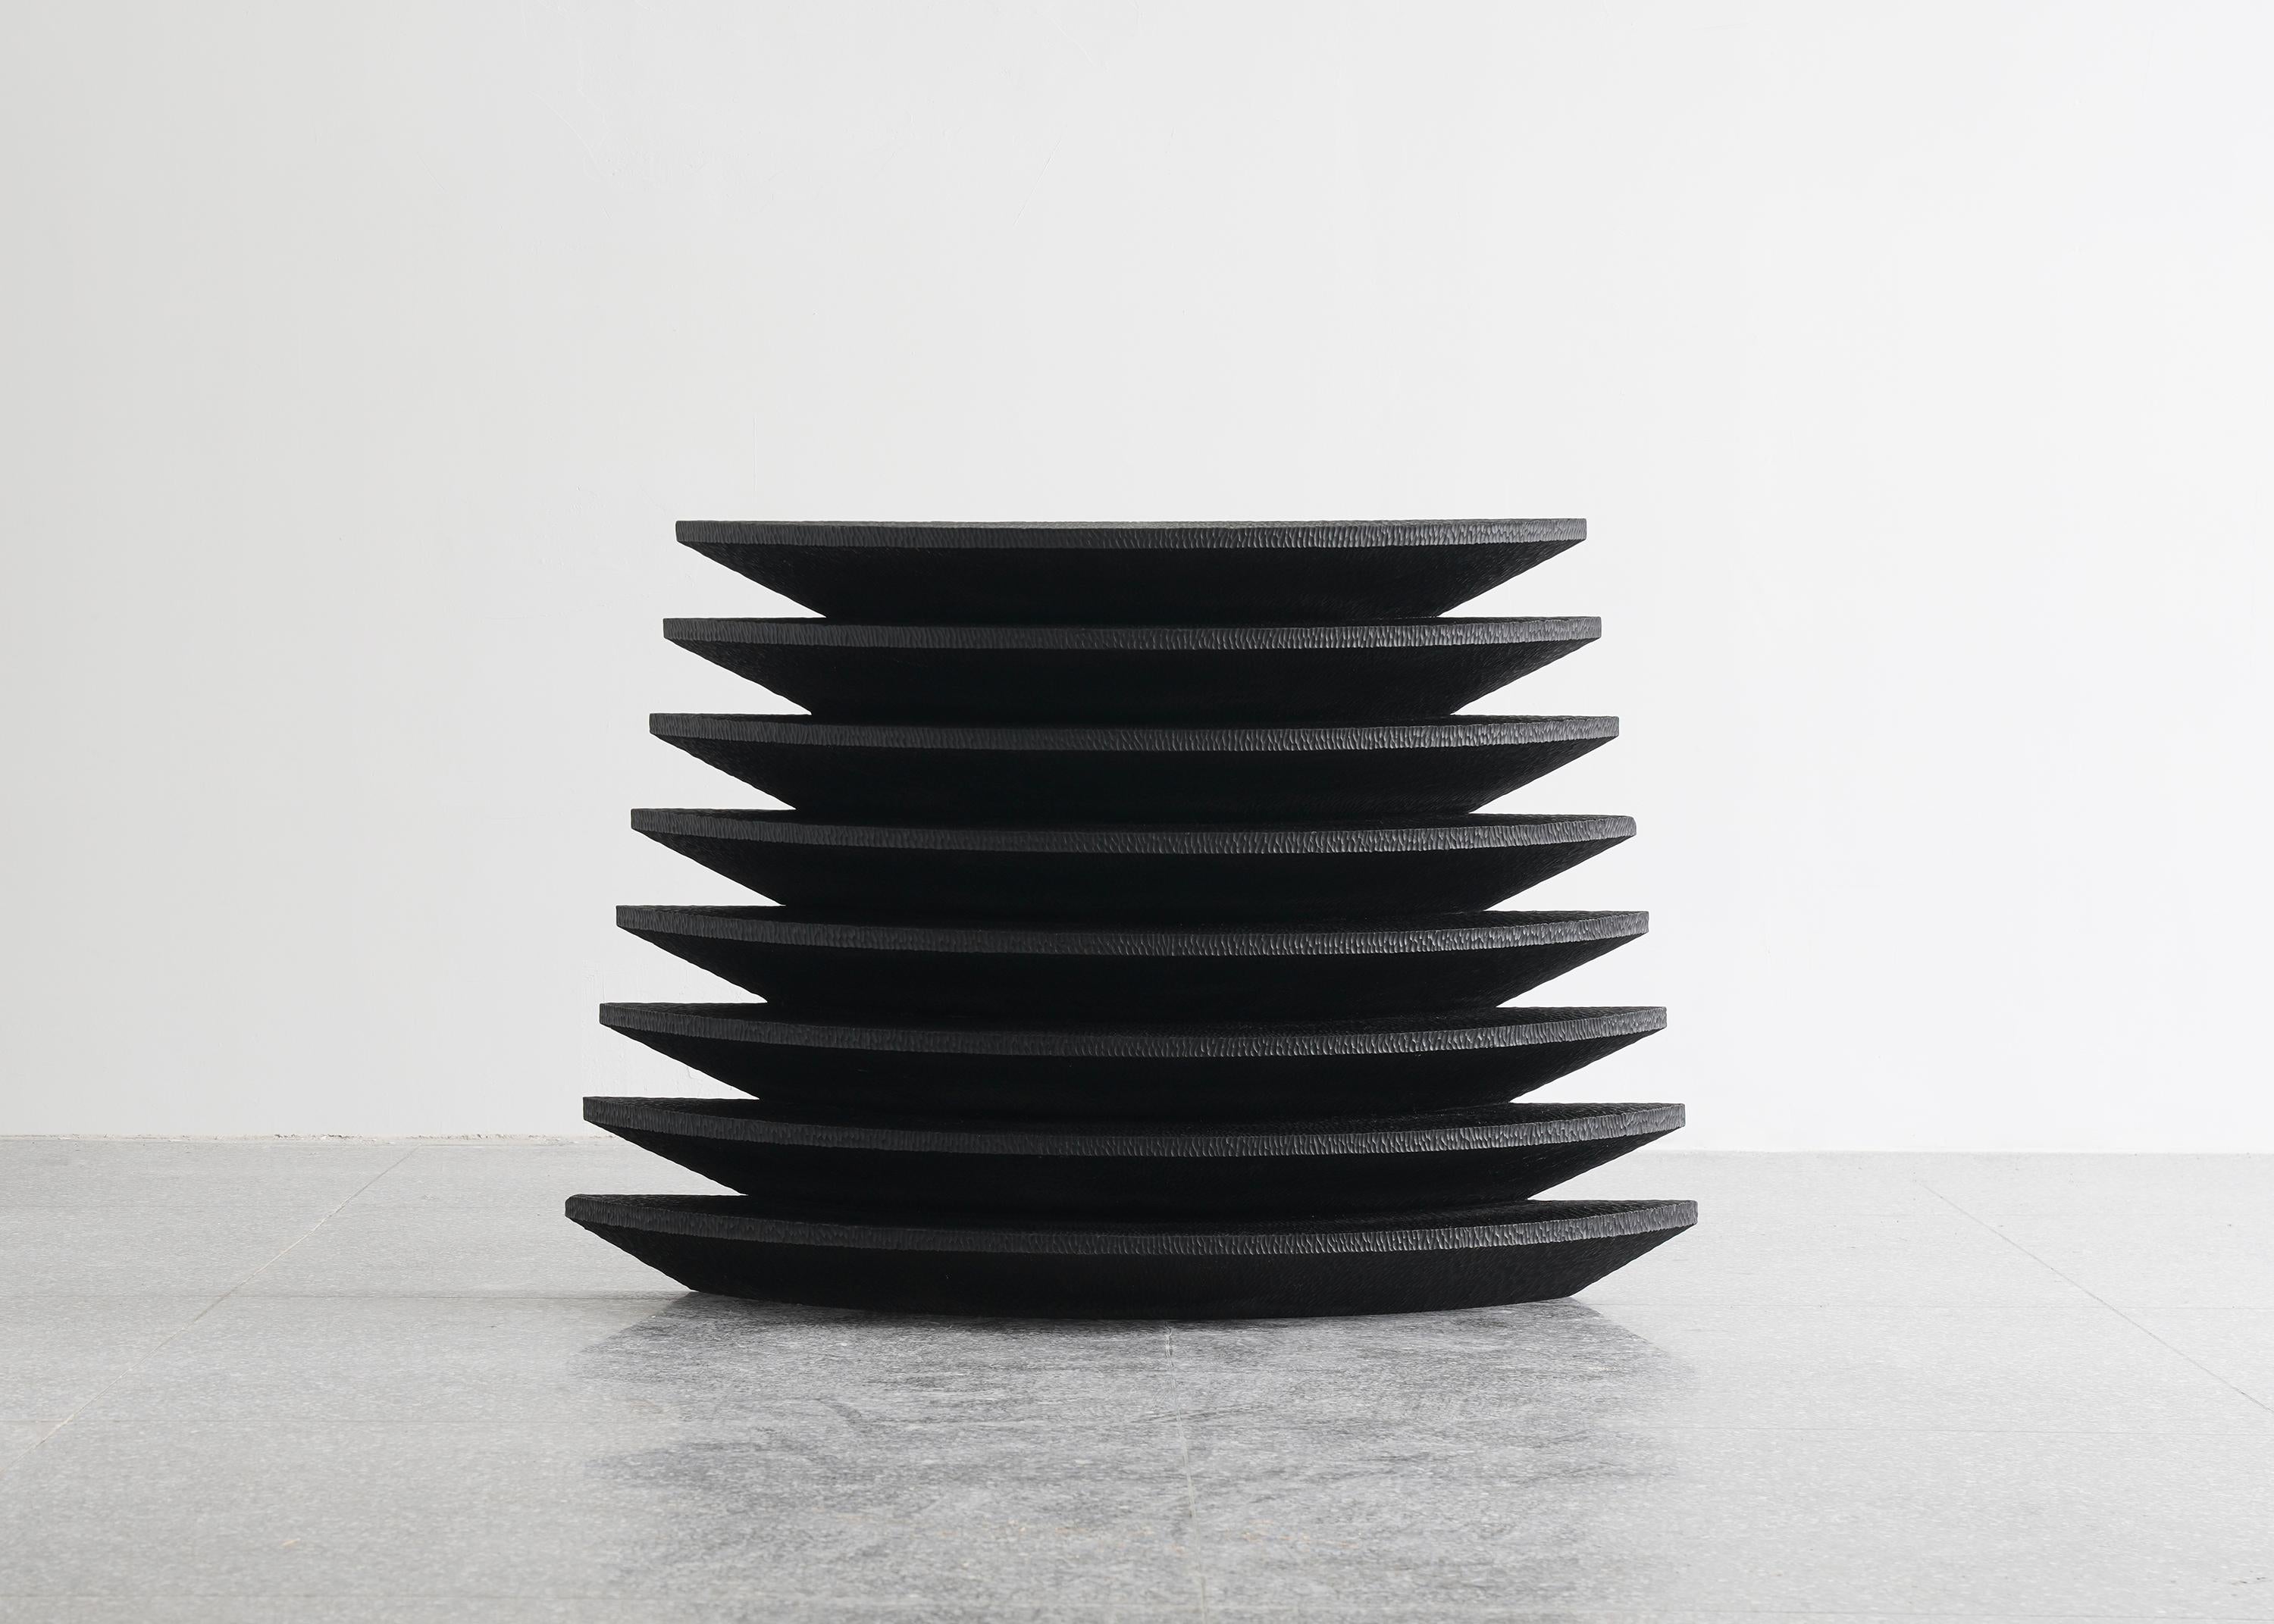 Table console Epang 01 par Sing Chan 
Dimensions : L 120 x D 39,5 x H 80 cm
MATERIAL : Sculpture manuelle, teck, peinture noire, cirage.

Sing Chan ( chinois : 陈星宇/Xingyu Chen), le fondateur de SINGCHAN DESIGN, est né en 1990, et a été diplômé du